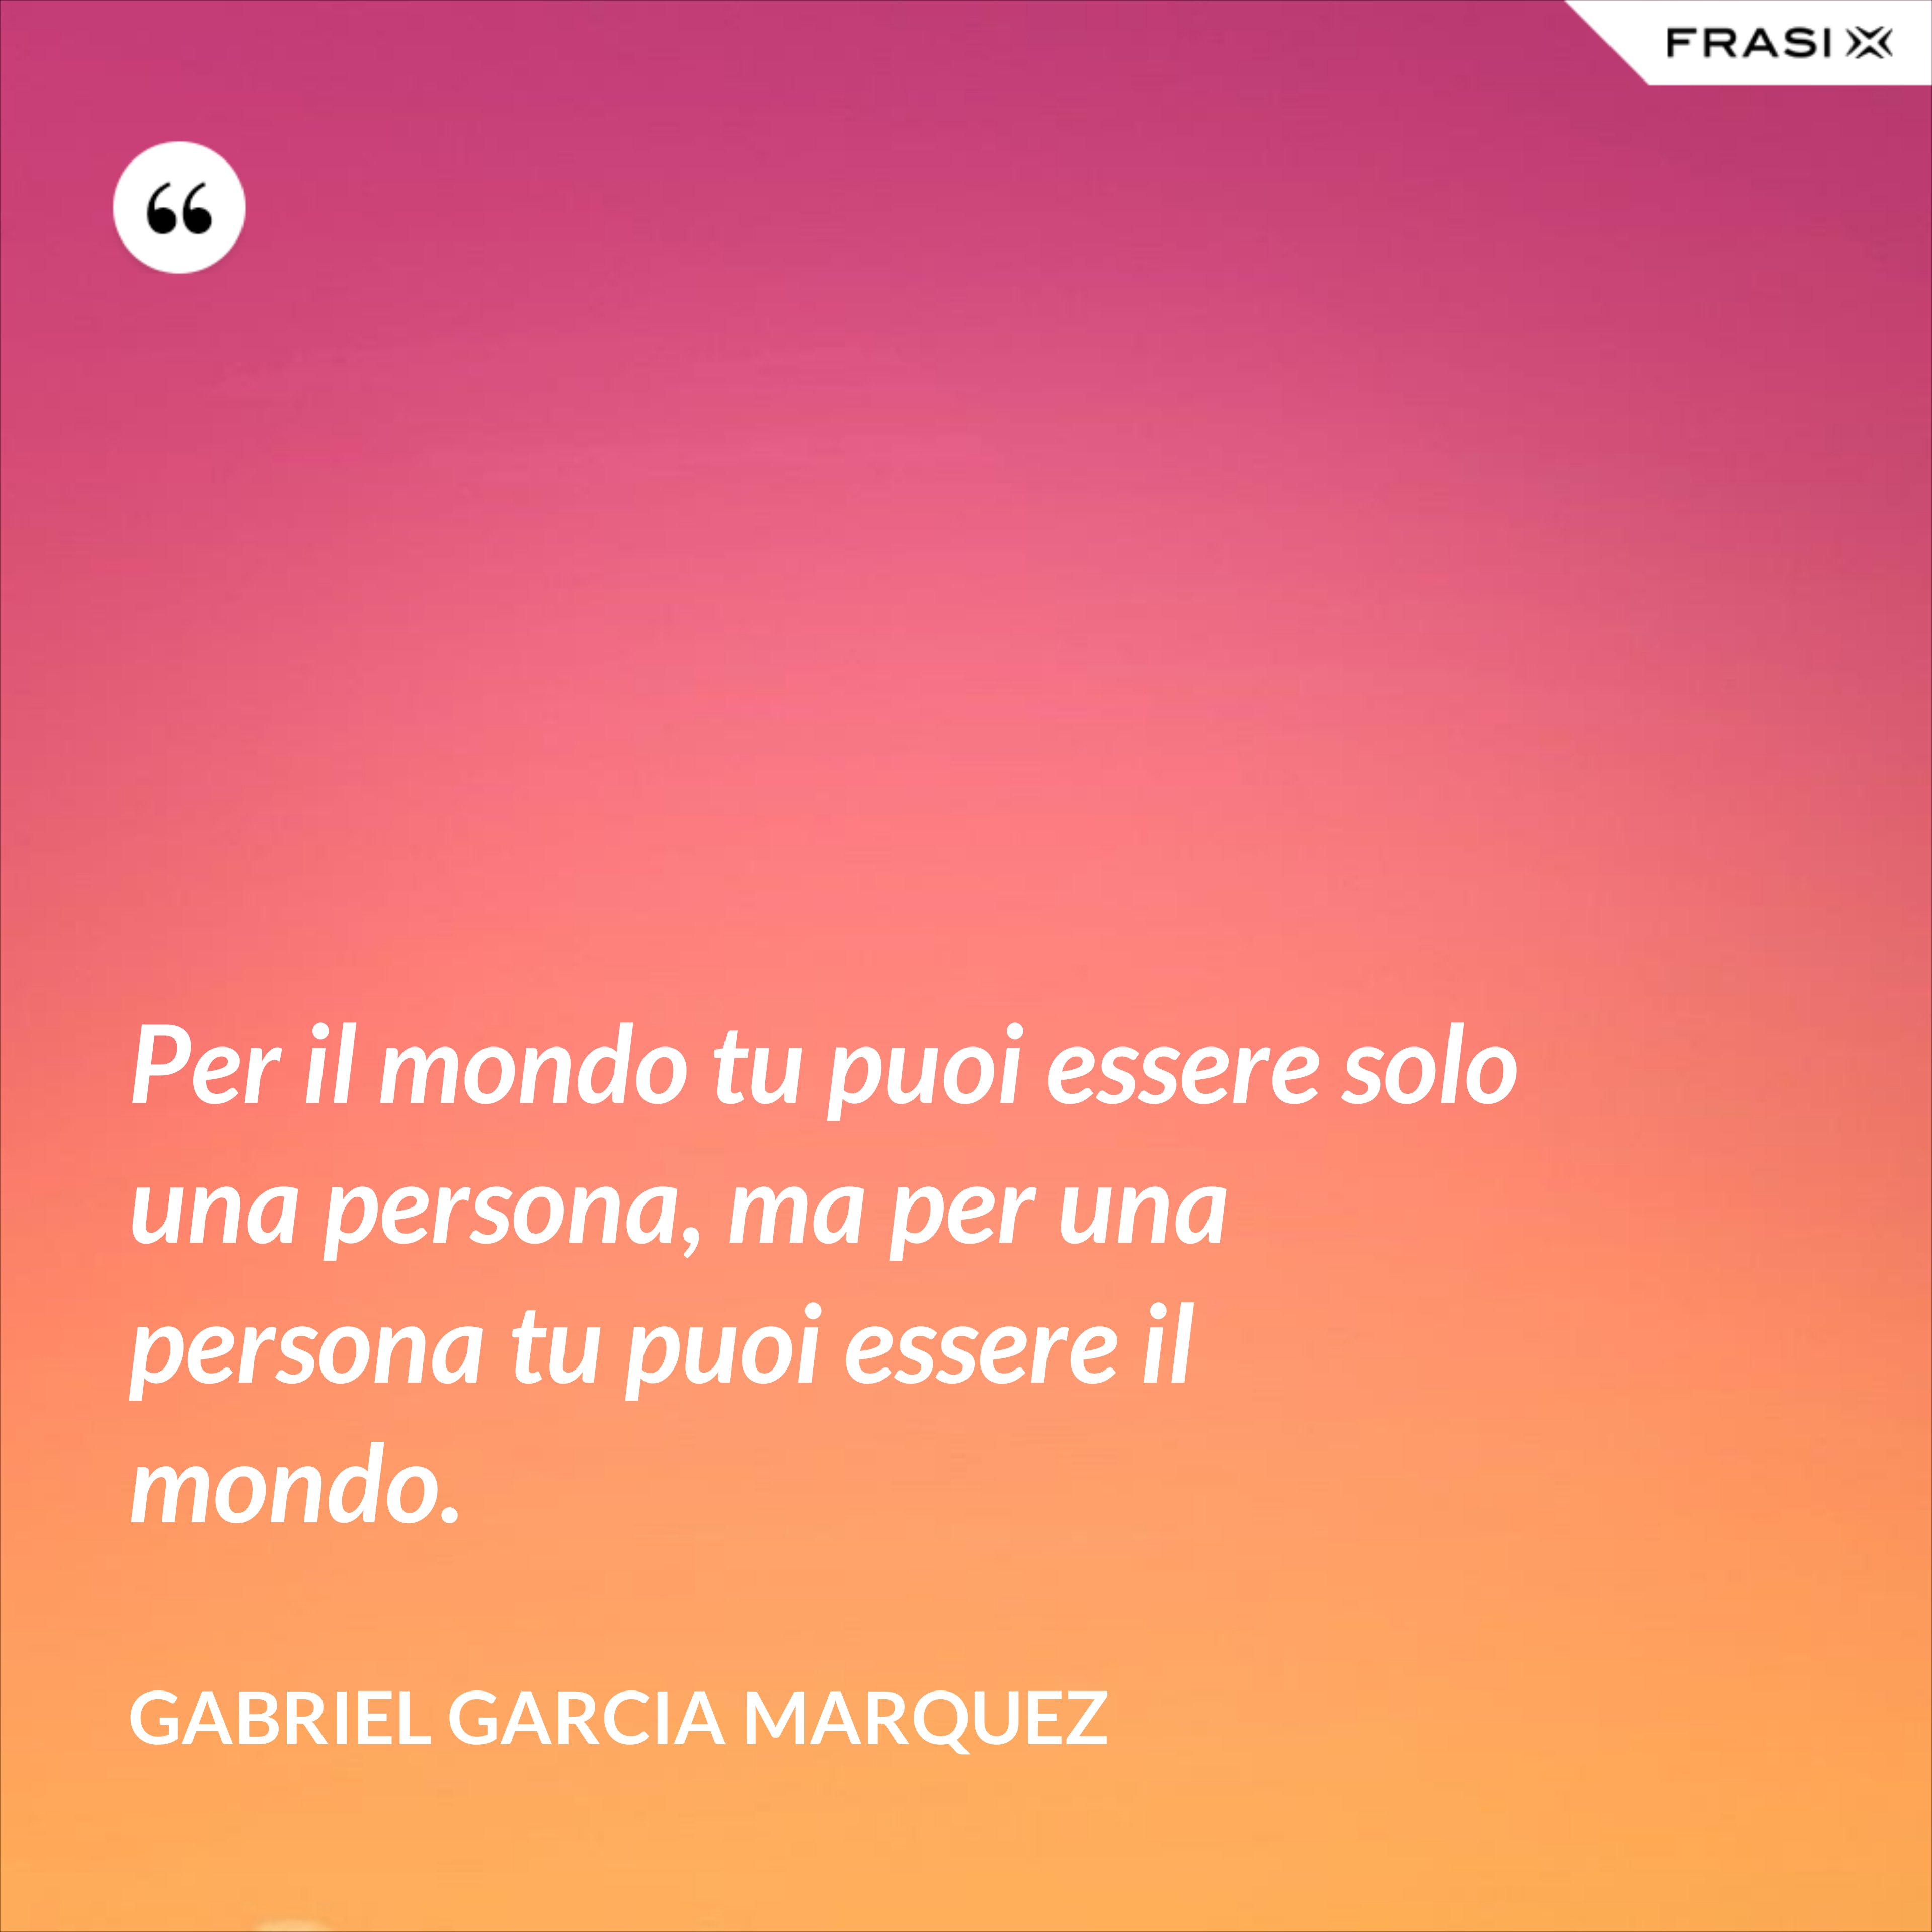 Per il mondo tu puoi essere solo una persona, ma per una persona tu puoi essere il mondo. - Gabriel Garcia Marquez